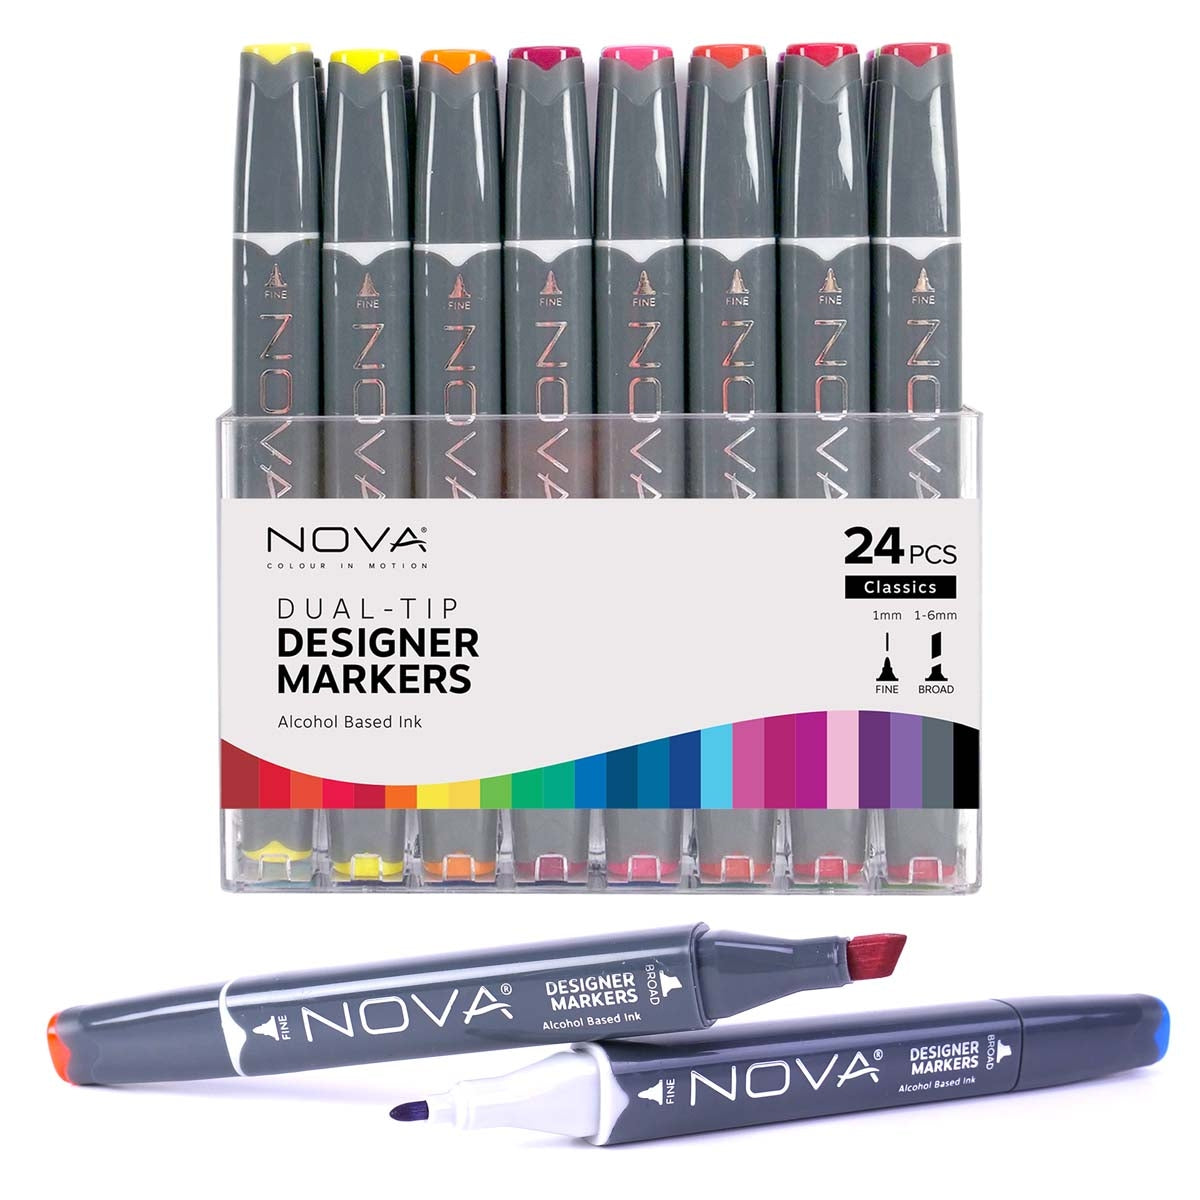 Nova - Designermarker - Dual Tipp - Alkoholbasierte - 24 Pack - Regenbogen